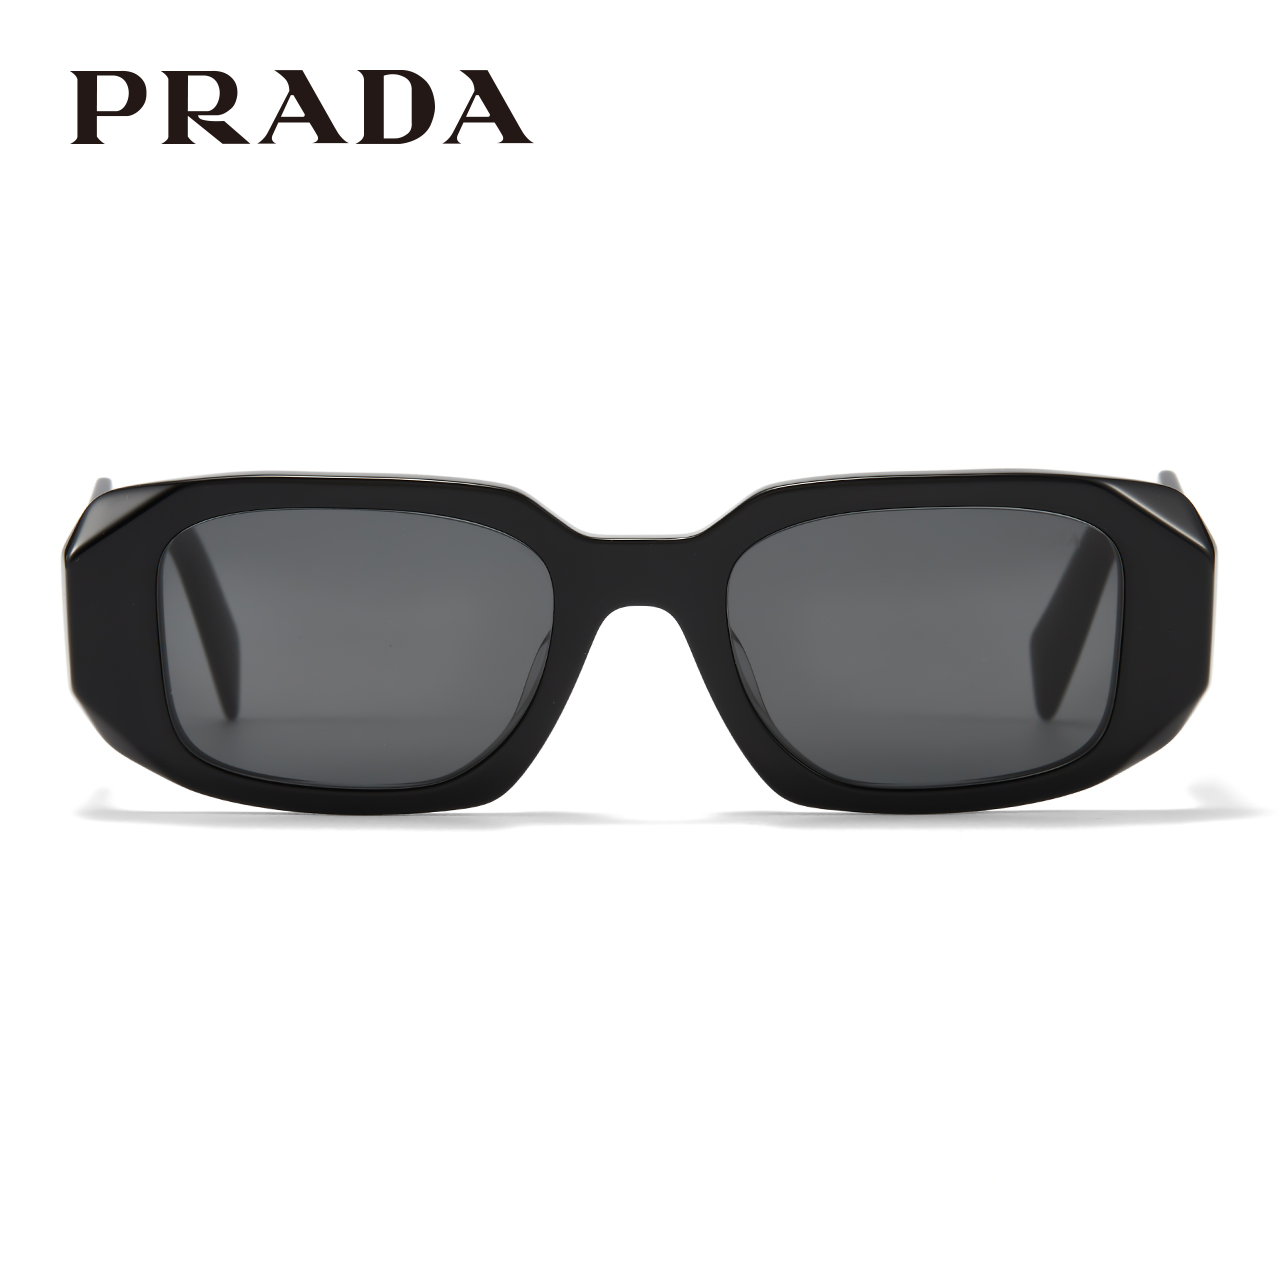 Prada墨镜普拉达太阳镜时尚小框板材方框女矩形遮阳眼镜宝岛17WSF